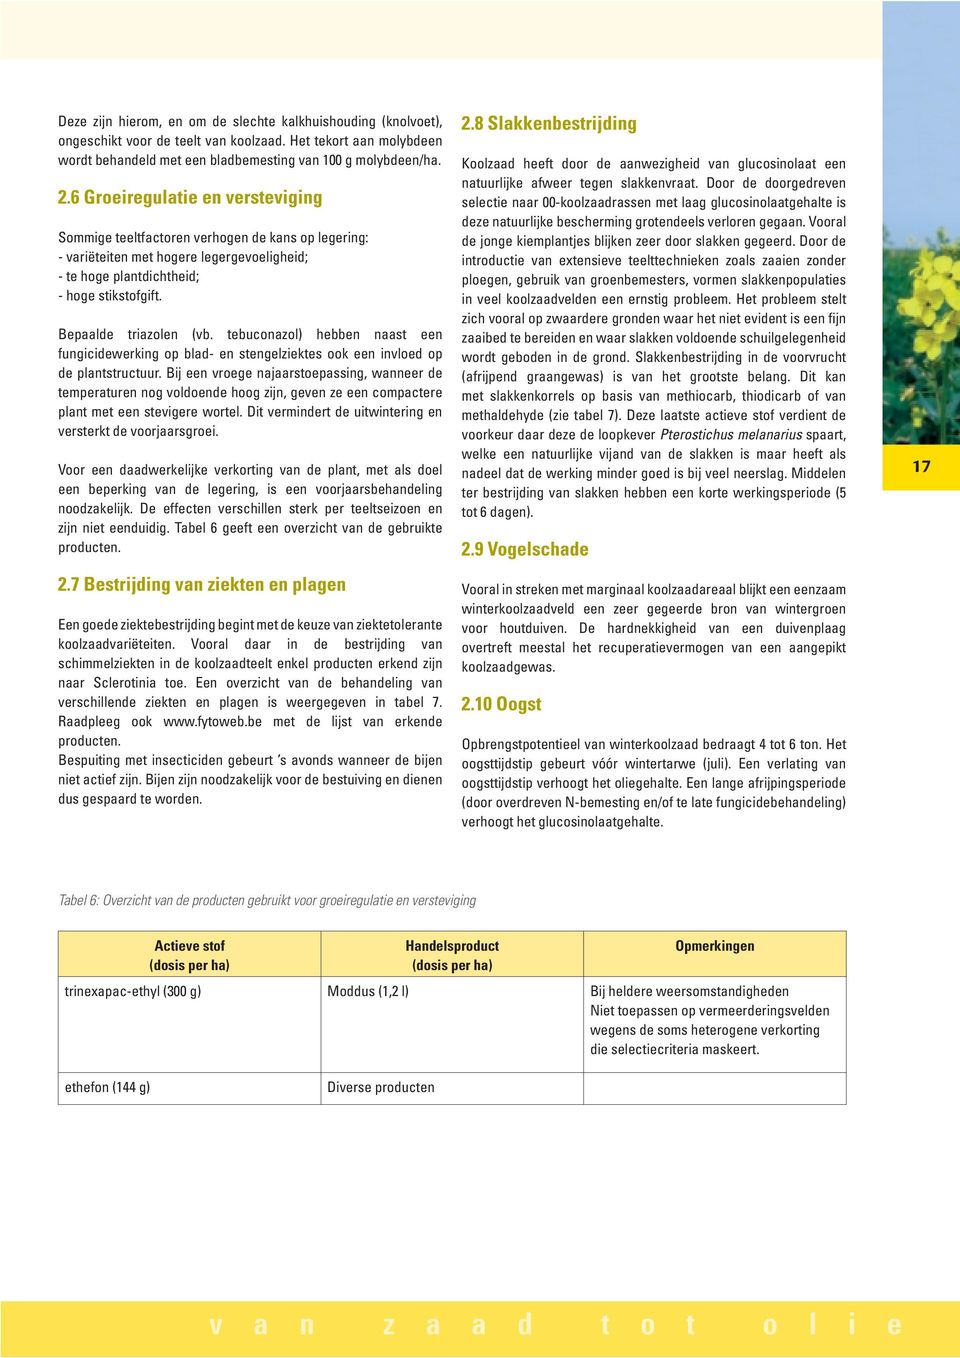 tebuconazol) hebben naast een fungicidewerking op blad- en stengelziektes ook een invloed op de plantstructuur.